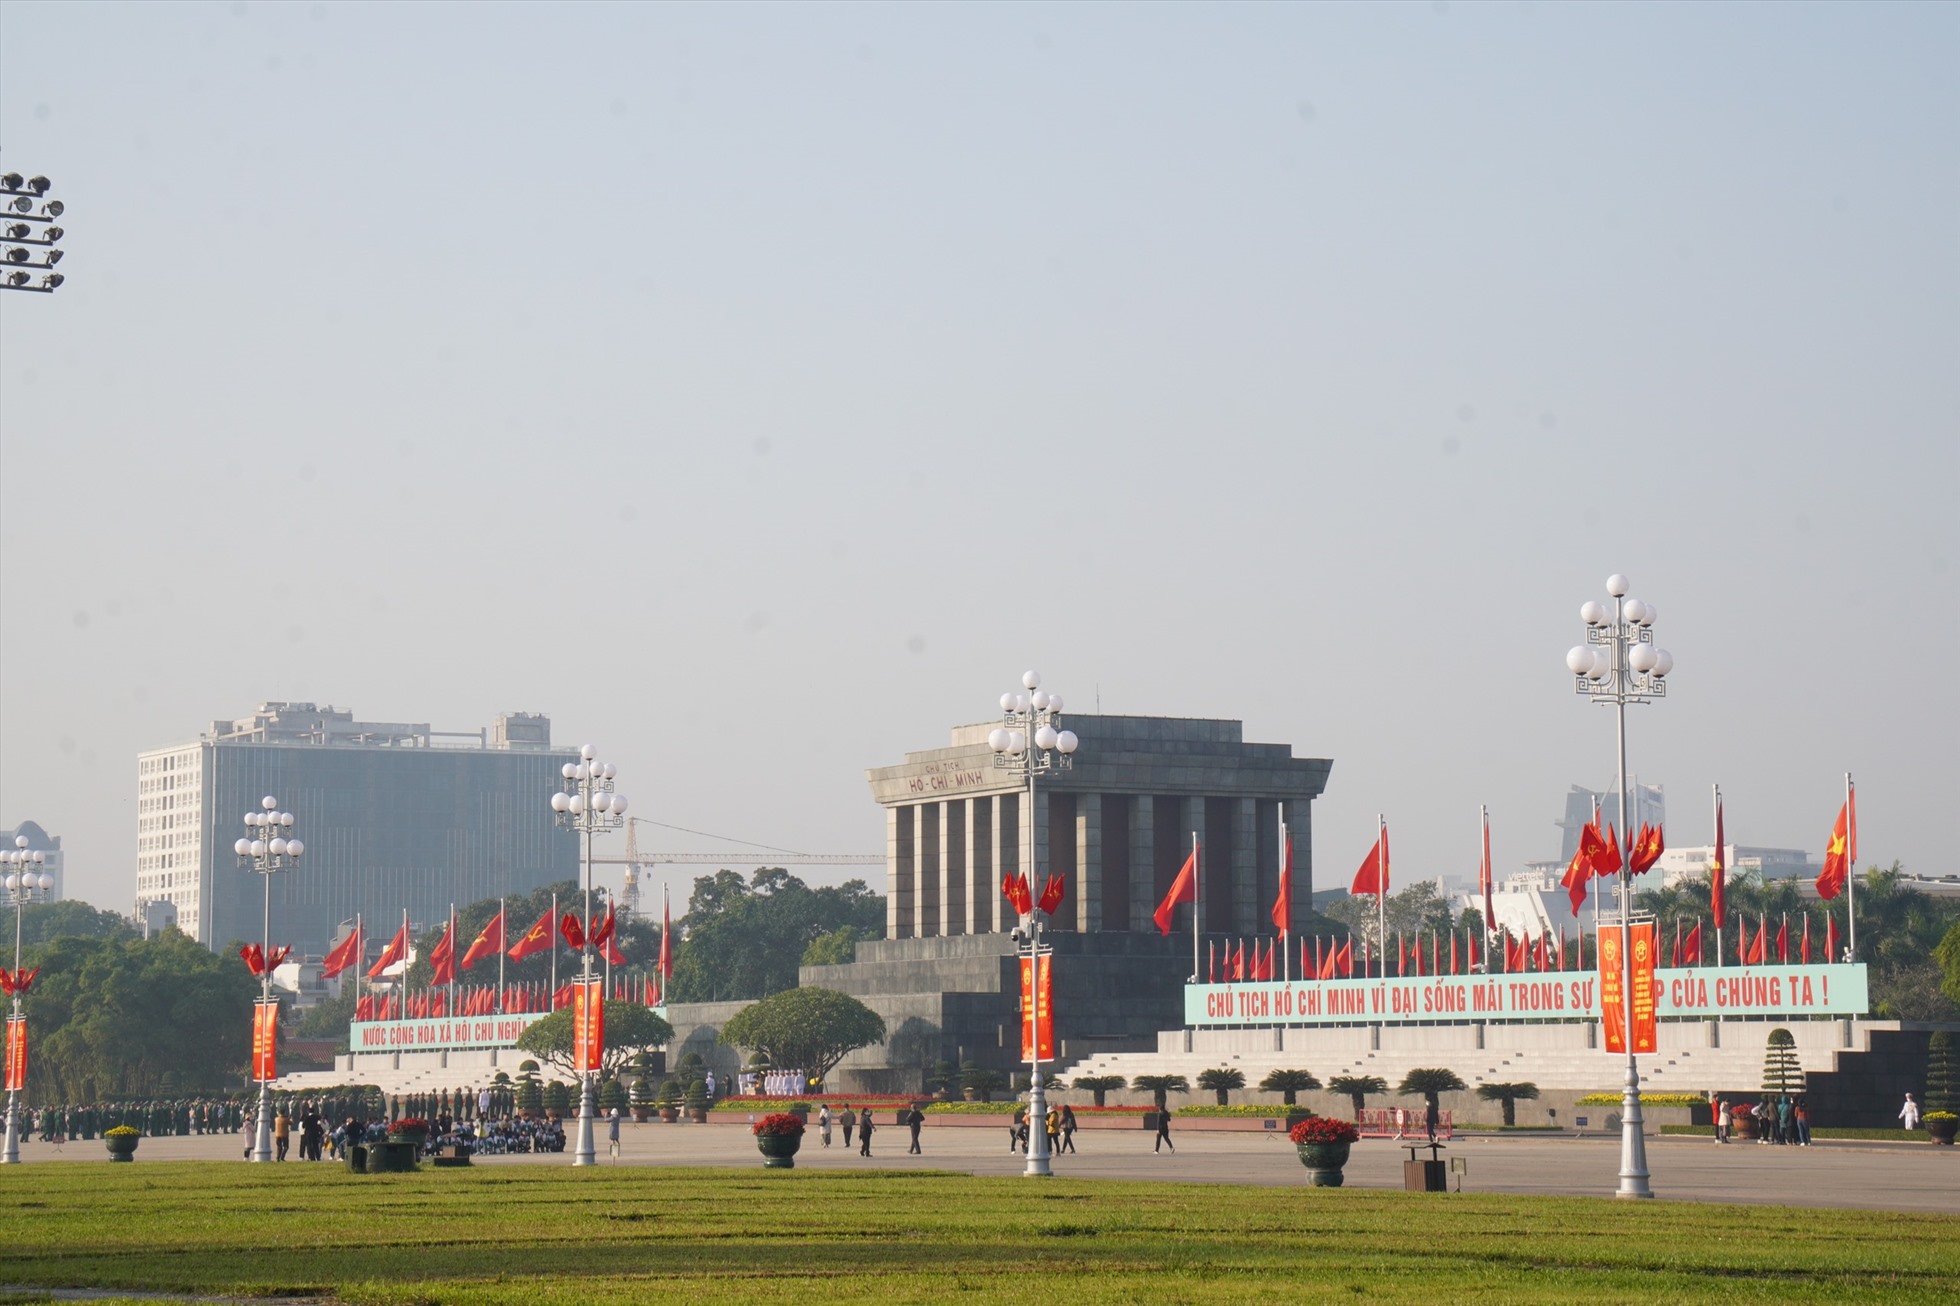 Quảng trường Ba Đình, Lăng Chủ tịch Hồ Chí Minh, cờ hoa được treo xung quanh chào mừng ngày lễ lớn của dân tộc.